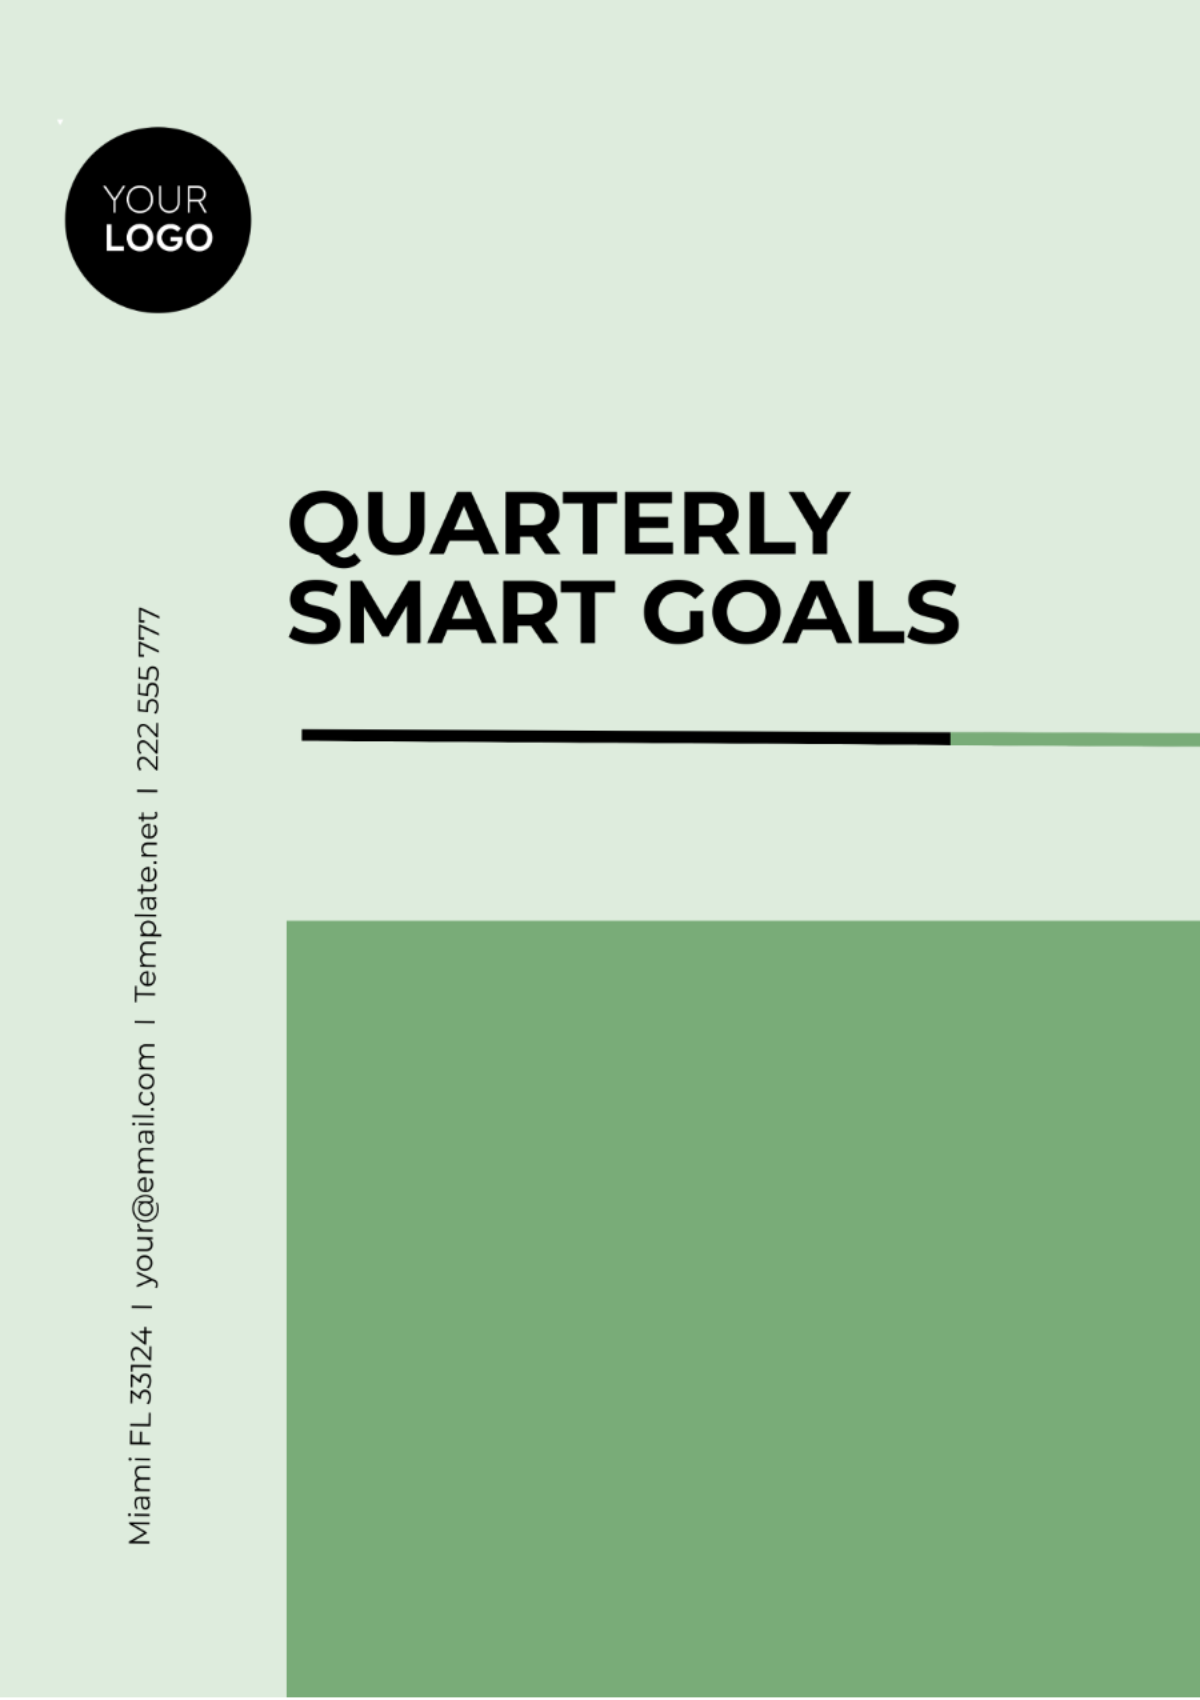 Quarterly SMART Goals Template